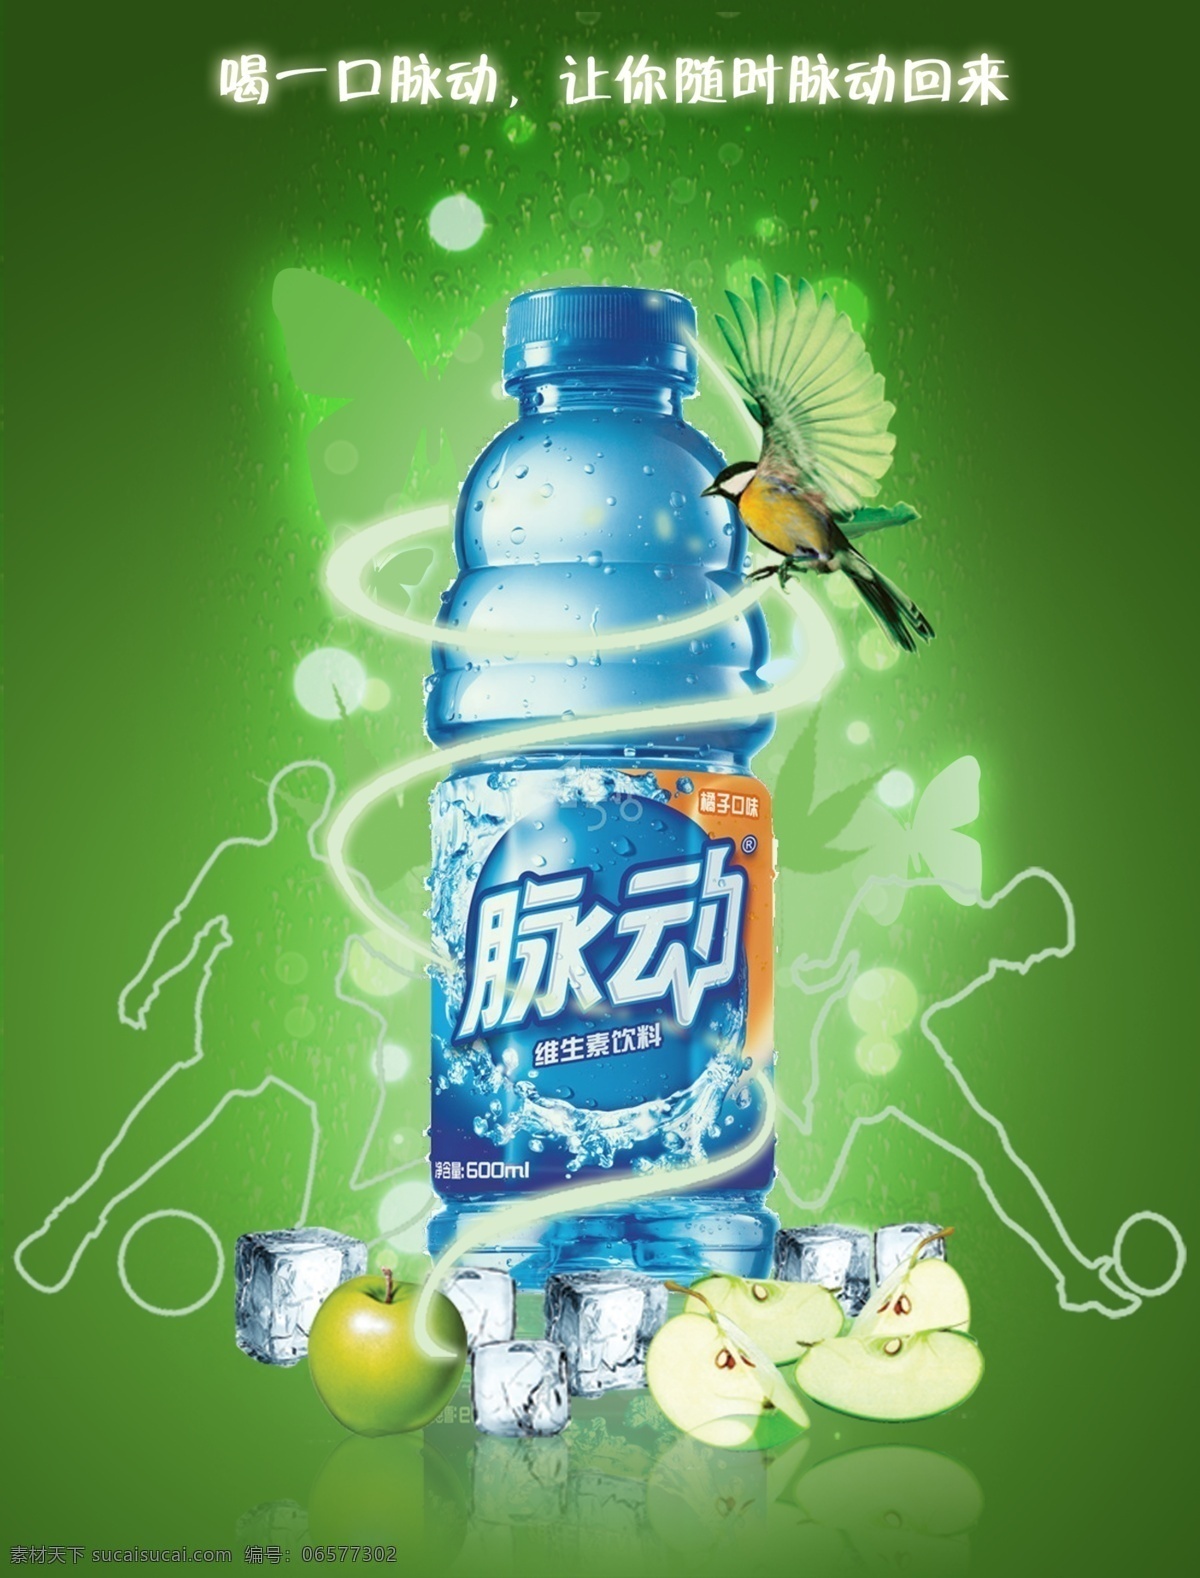 脉动 维生素 饮料 广告 维生素饮料 psd分层 海报 绿色背景 饮料广告 水 国内广告设计